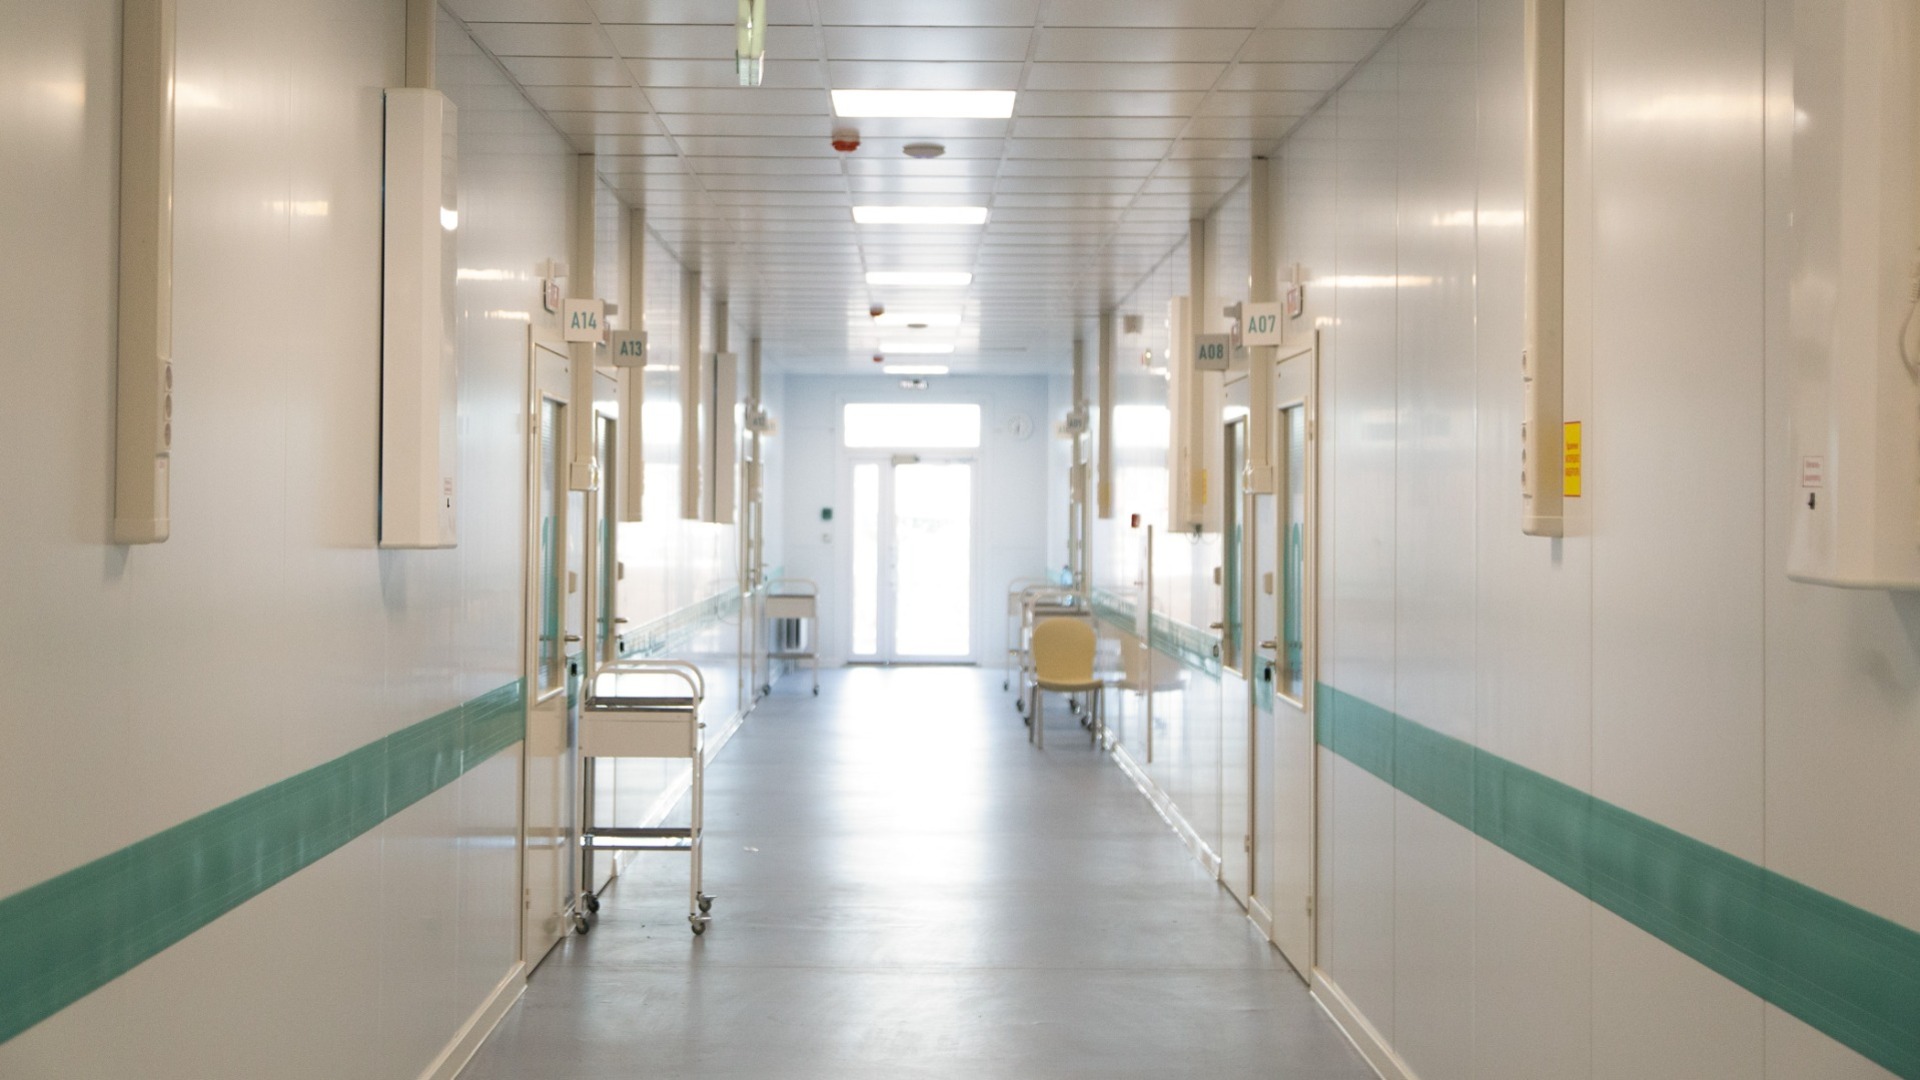 Ковид-госпиталь в Зубово переходит на обычный режим работы с инфекционными больными